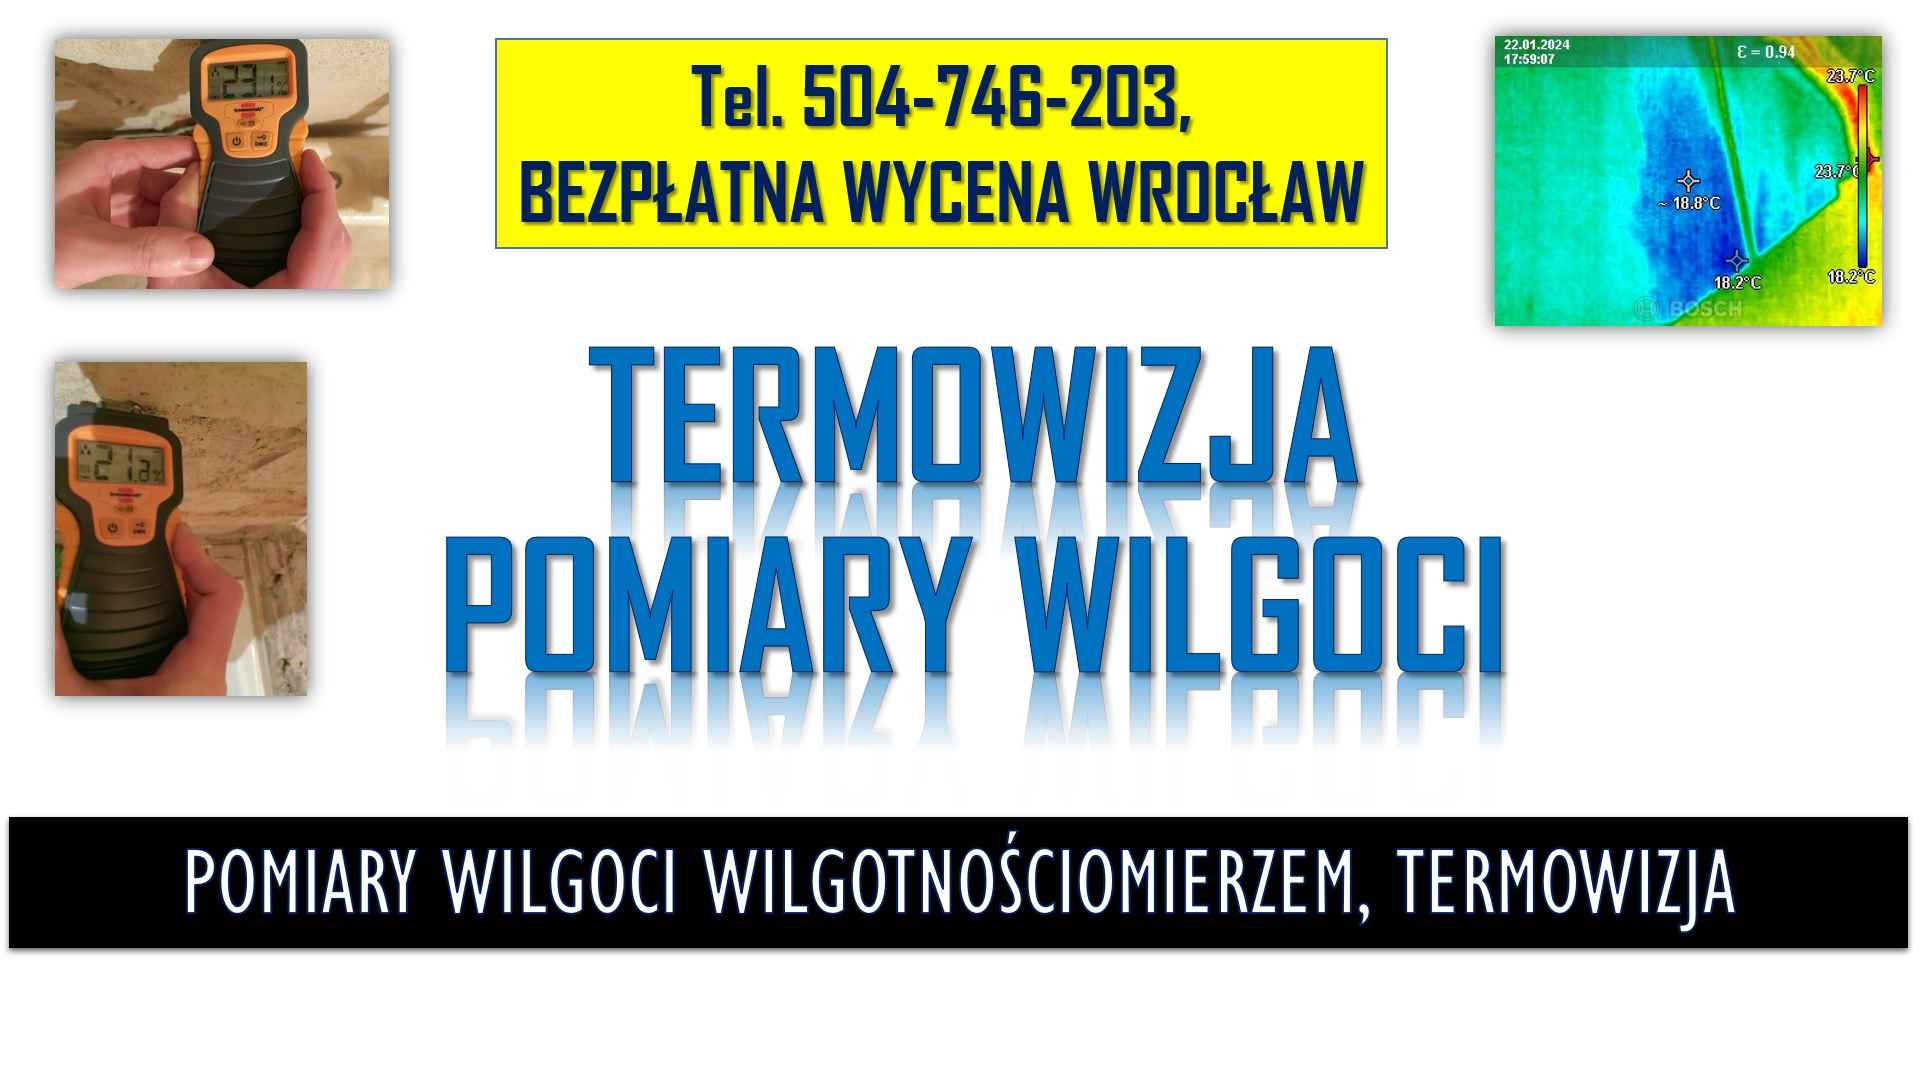 Pomiar wilgotnościomierzem, Wrocław, t.504746203. Wilgotności ściany. Psie Pole - zdjęcie 4